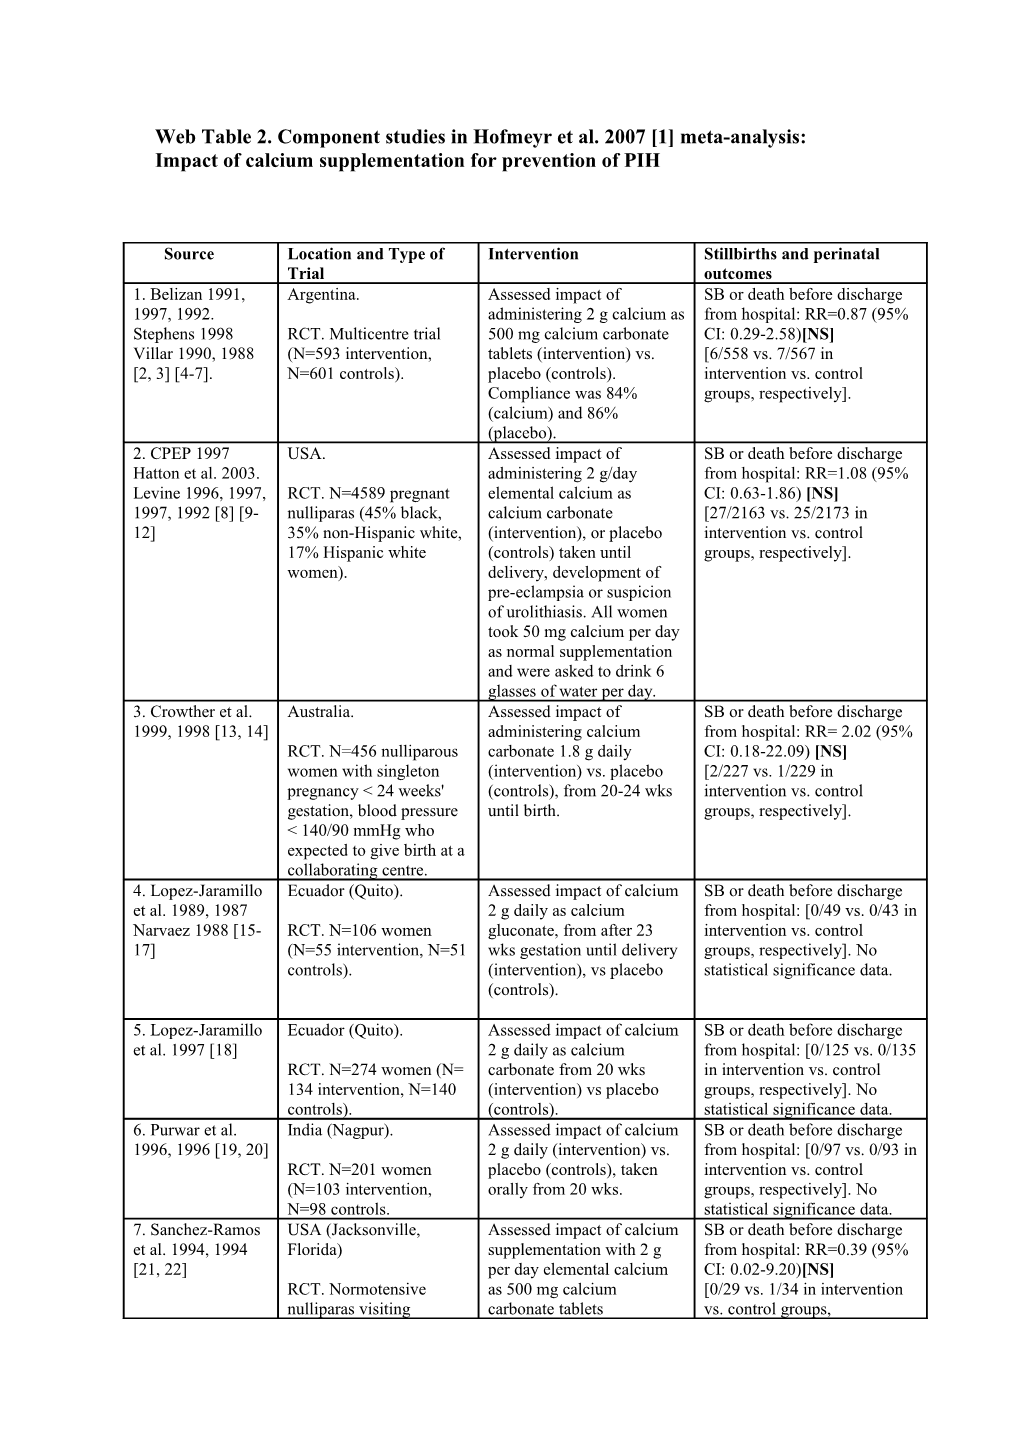 Web Table 2. Component Studies in Hofmeyr Et Al. 2007 1 Meta-Analysis: Impact of Calcium